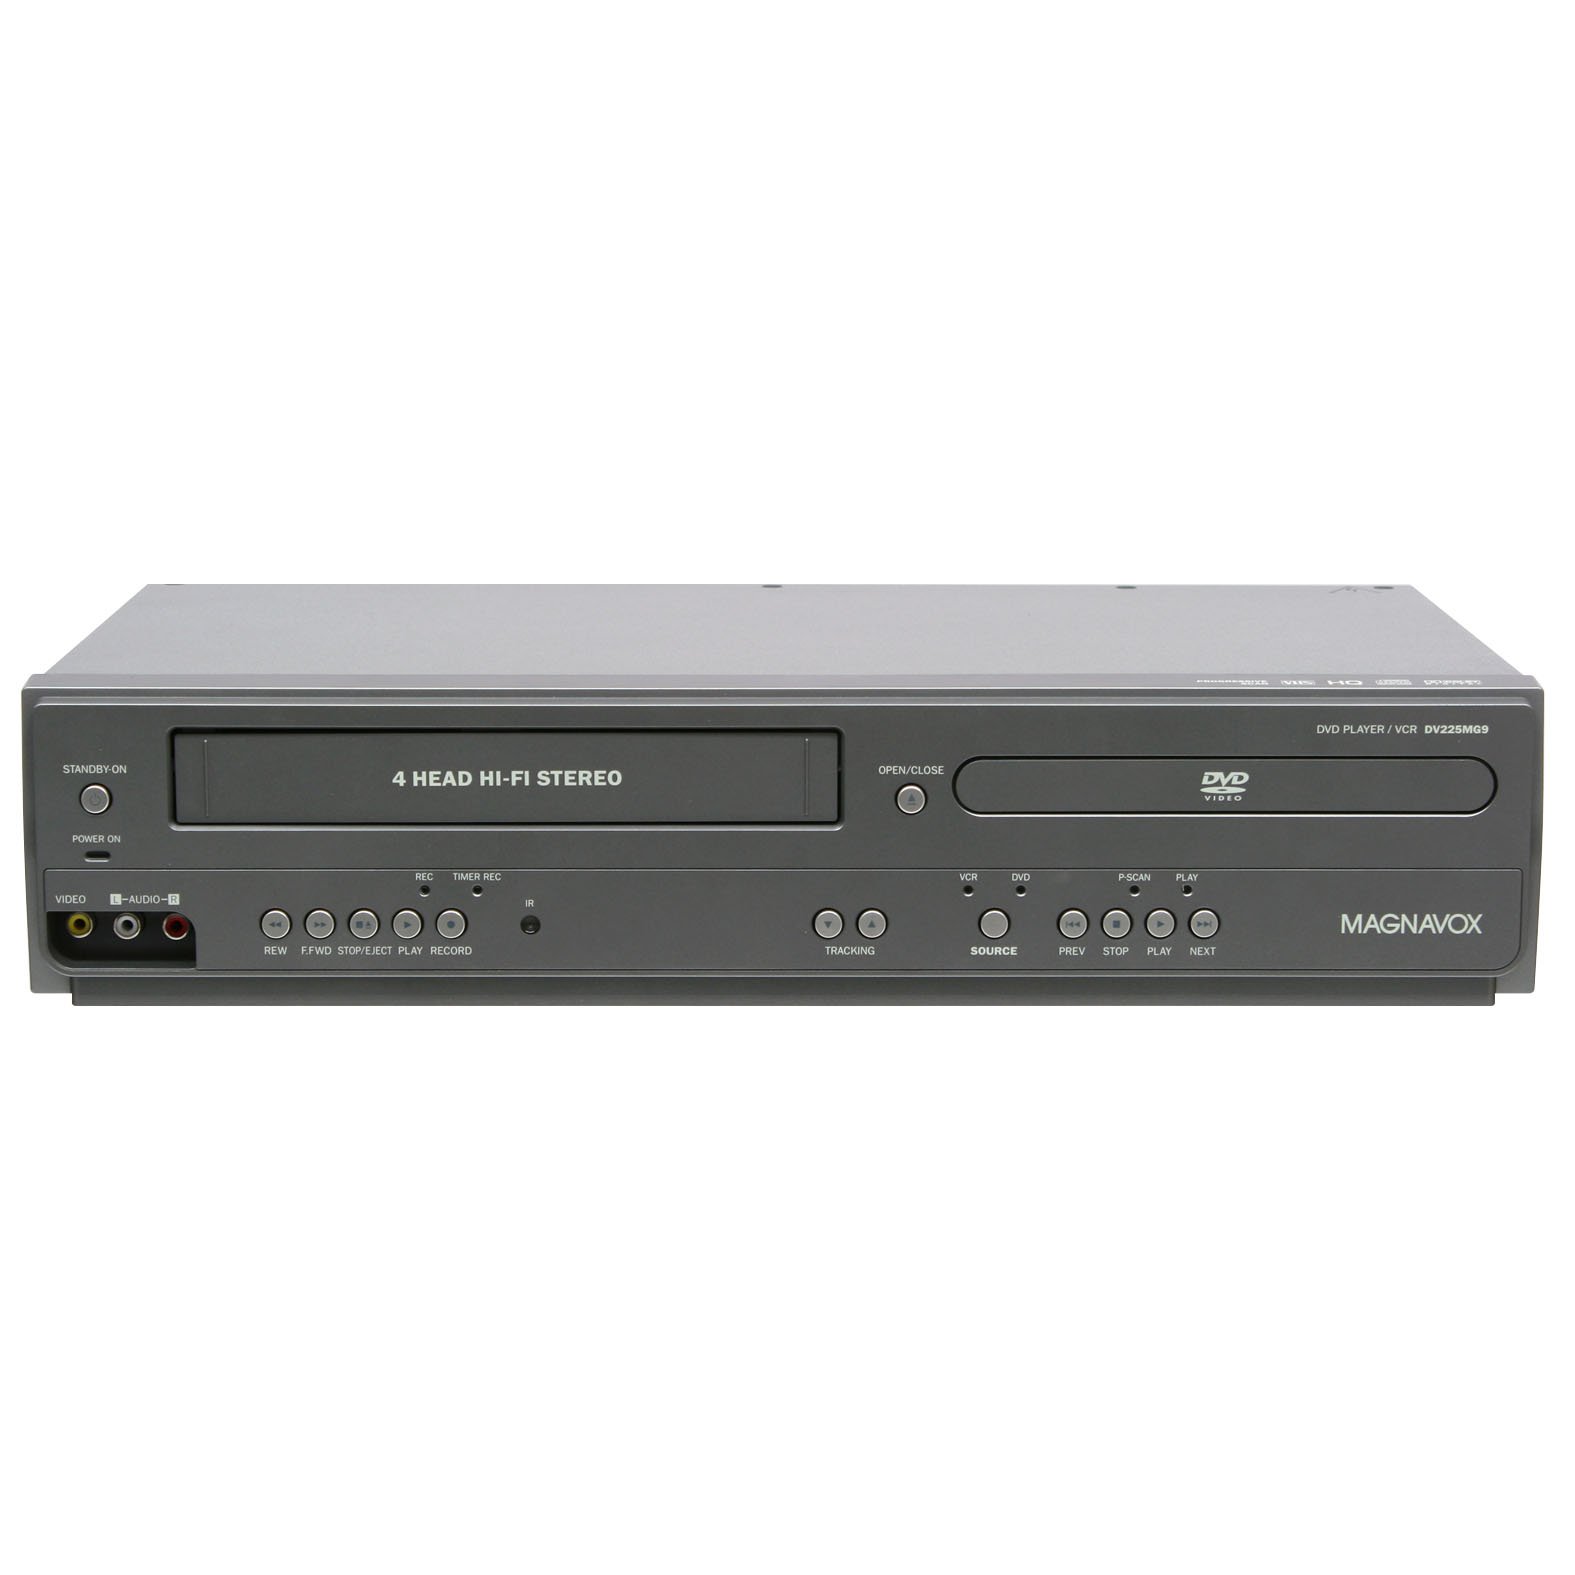 Magnavox DV225MG9 Reproductor de DVD y VCR estéreo Hi-F...